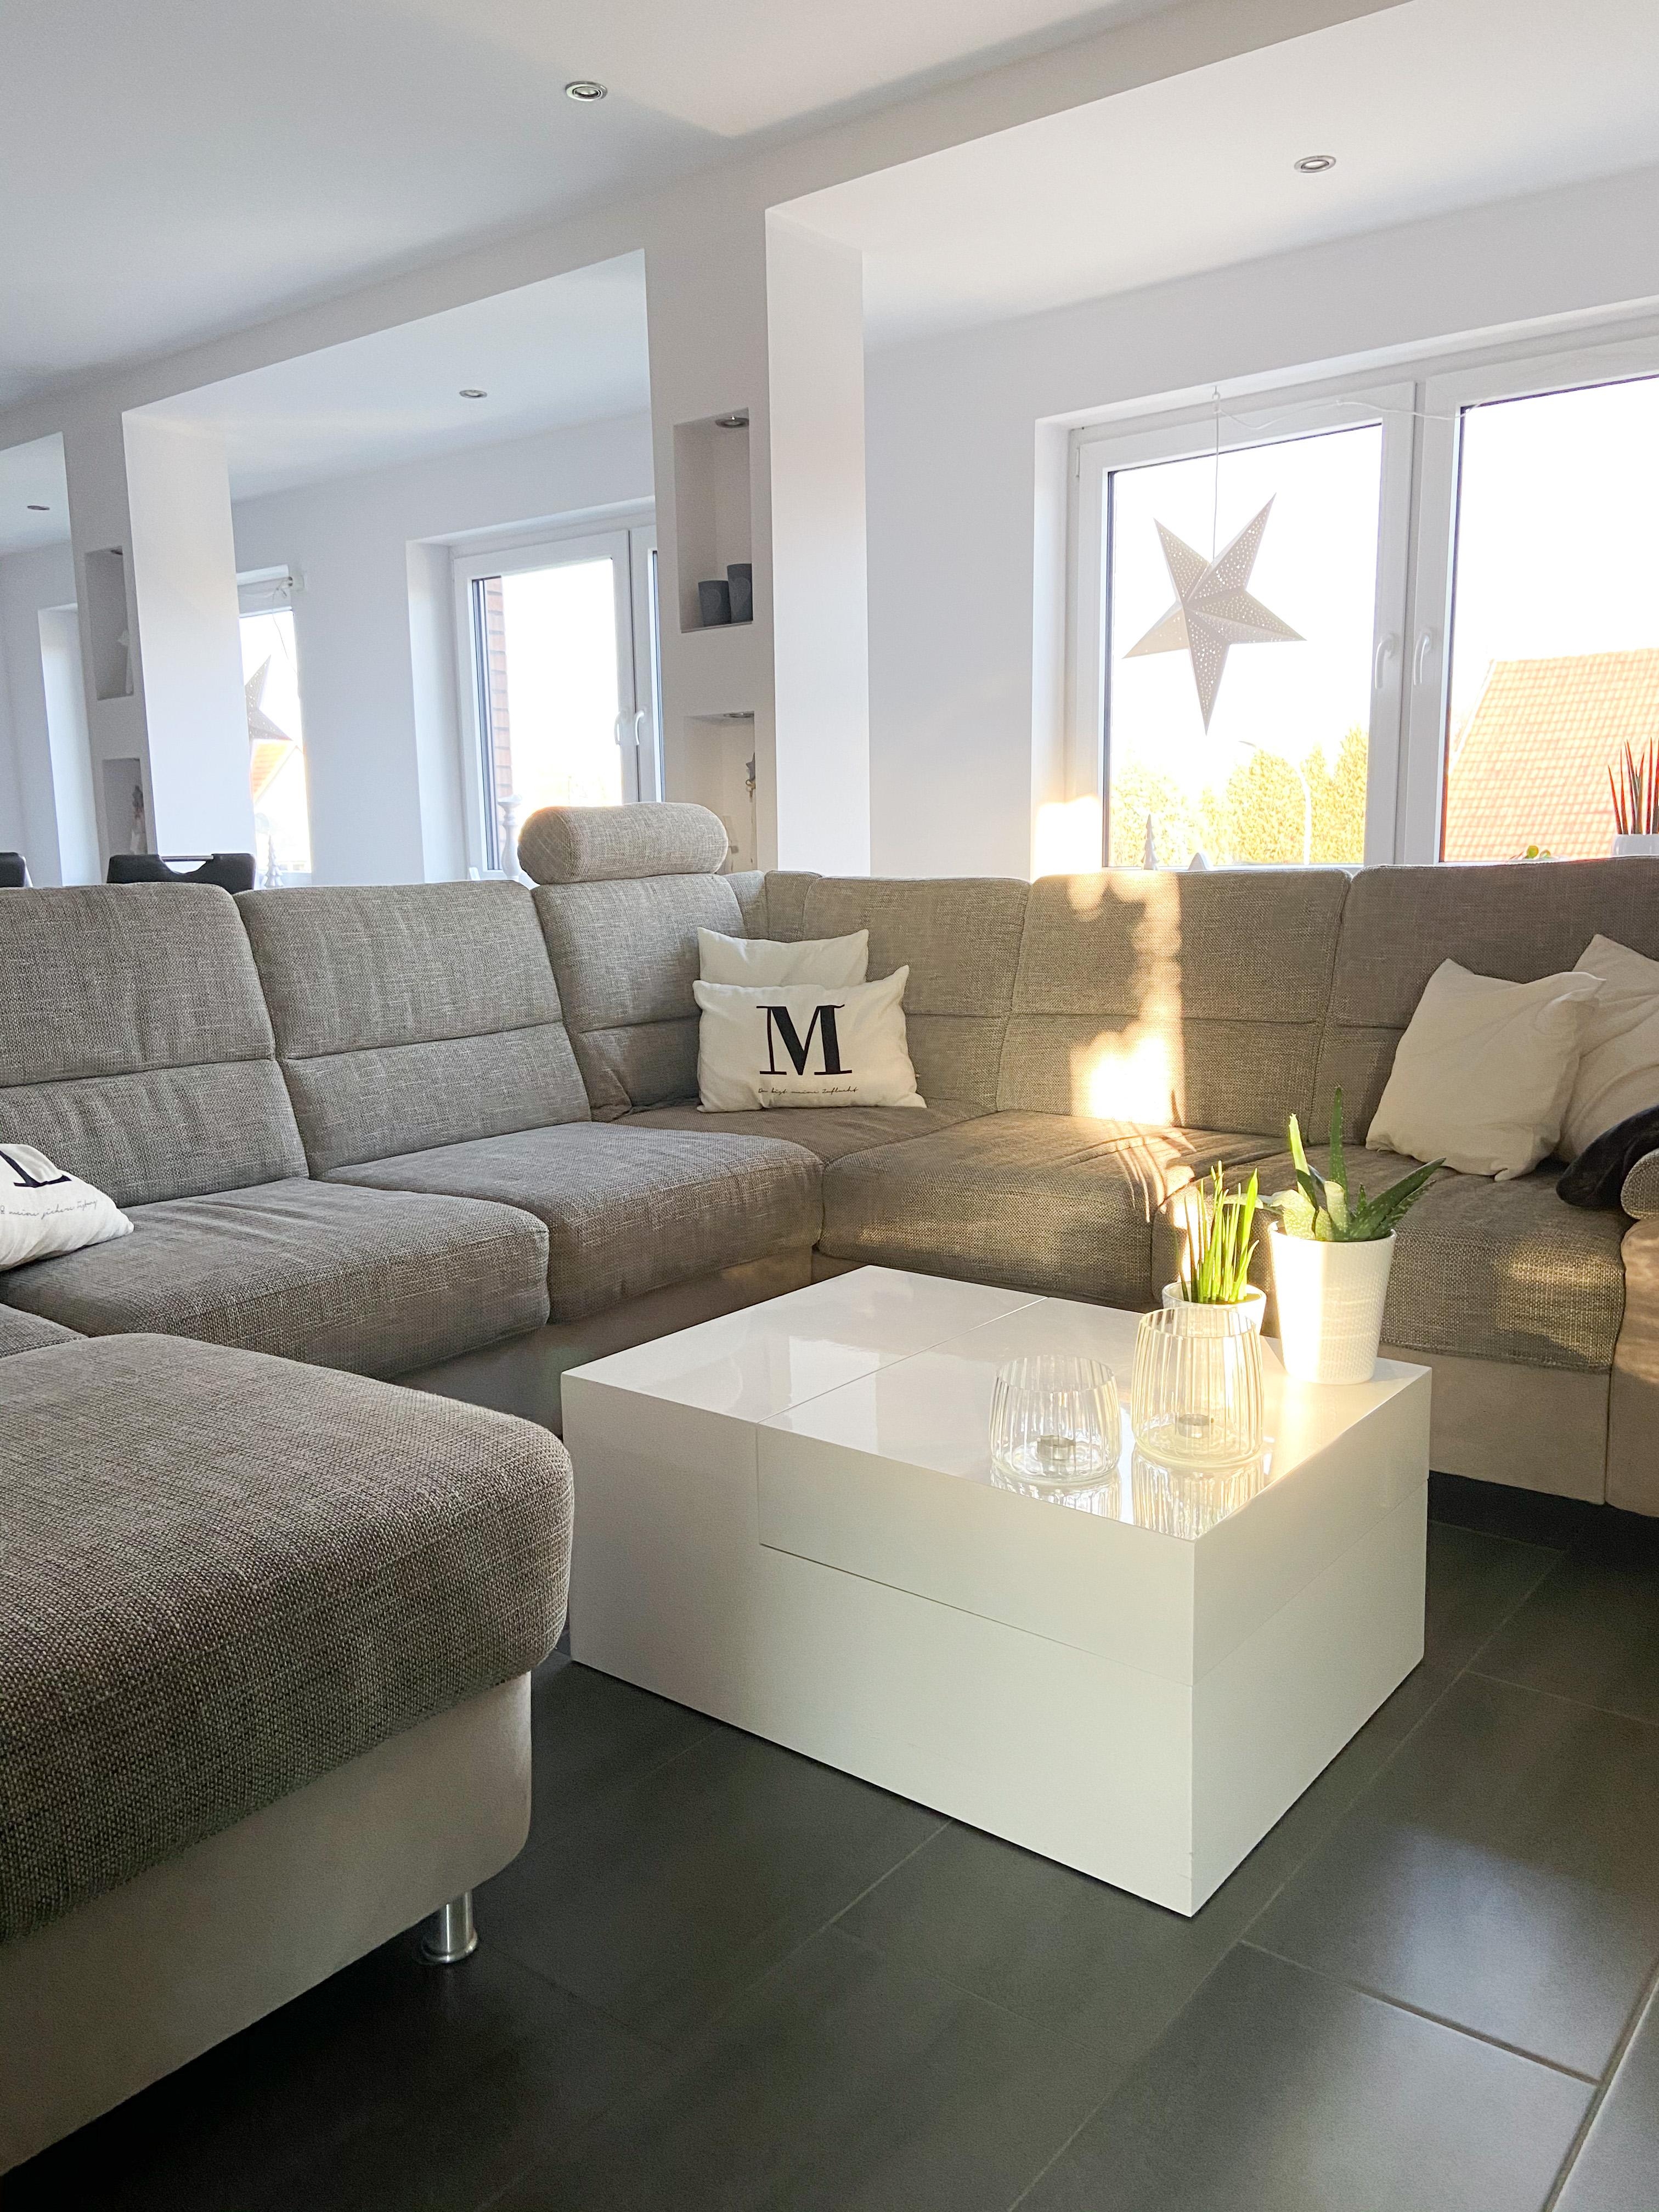 #livingroom
Habt einen tollen Abend ⭐️
#couchliebt #couchmagazin #homestyle #interior #livingroominspo #wohnen #deko